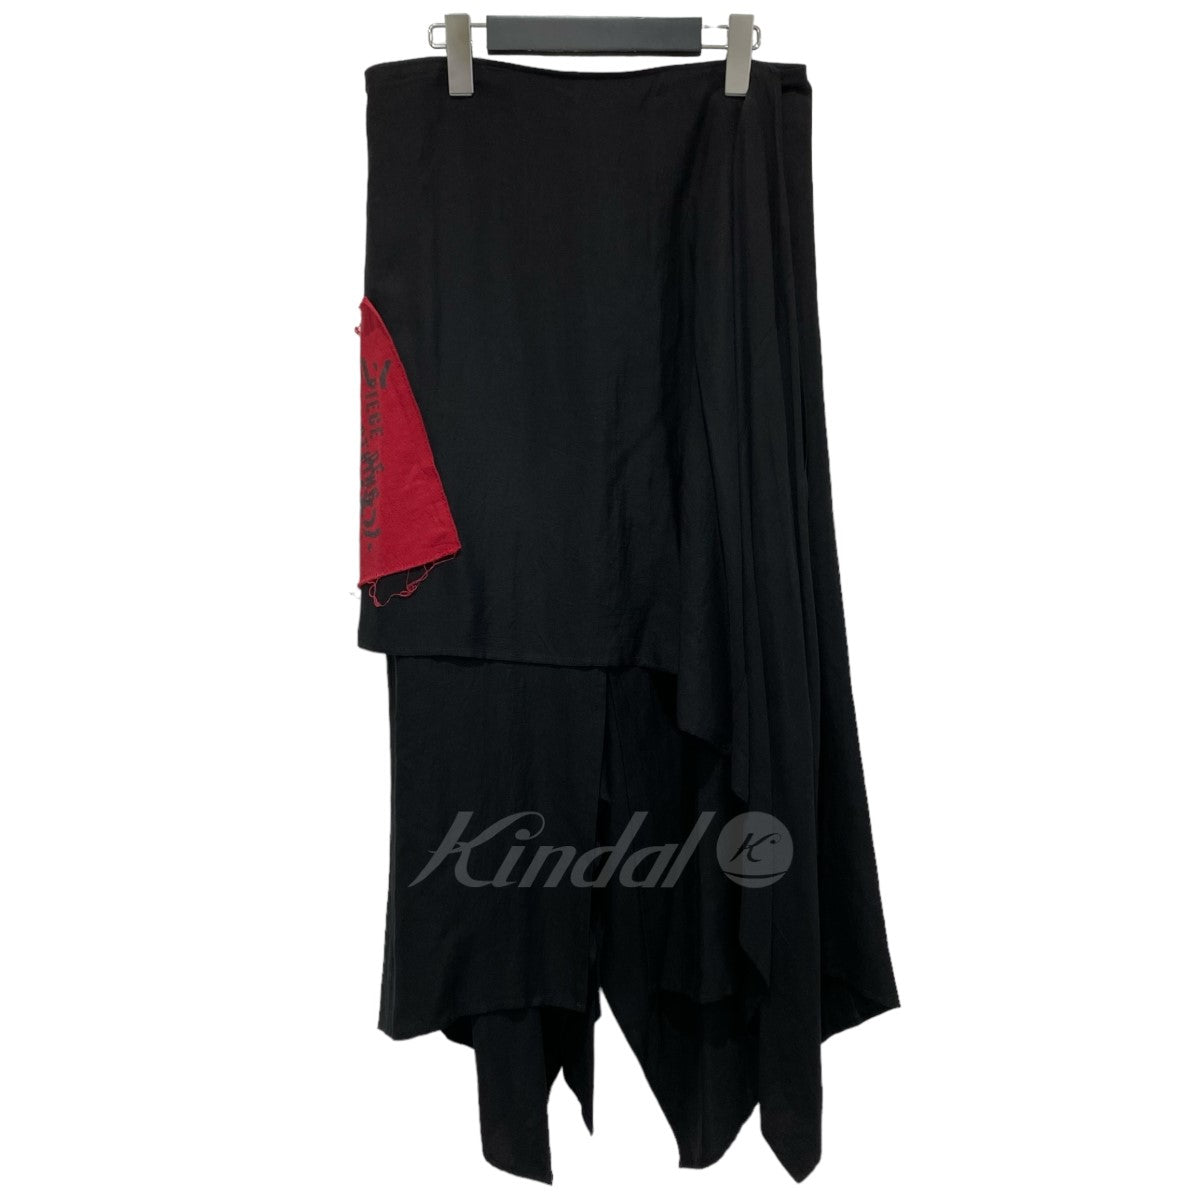 LIMI feu(リミ フゥ) 巻きスカート LJ-S10-200-1-02 ブラック サイズ 